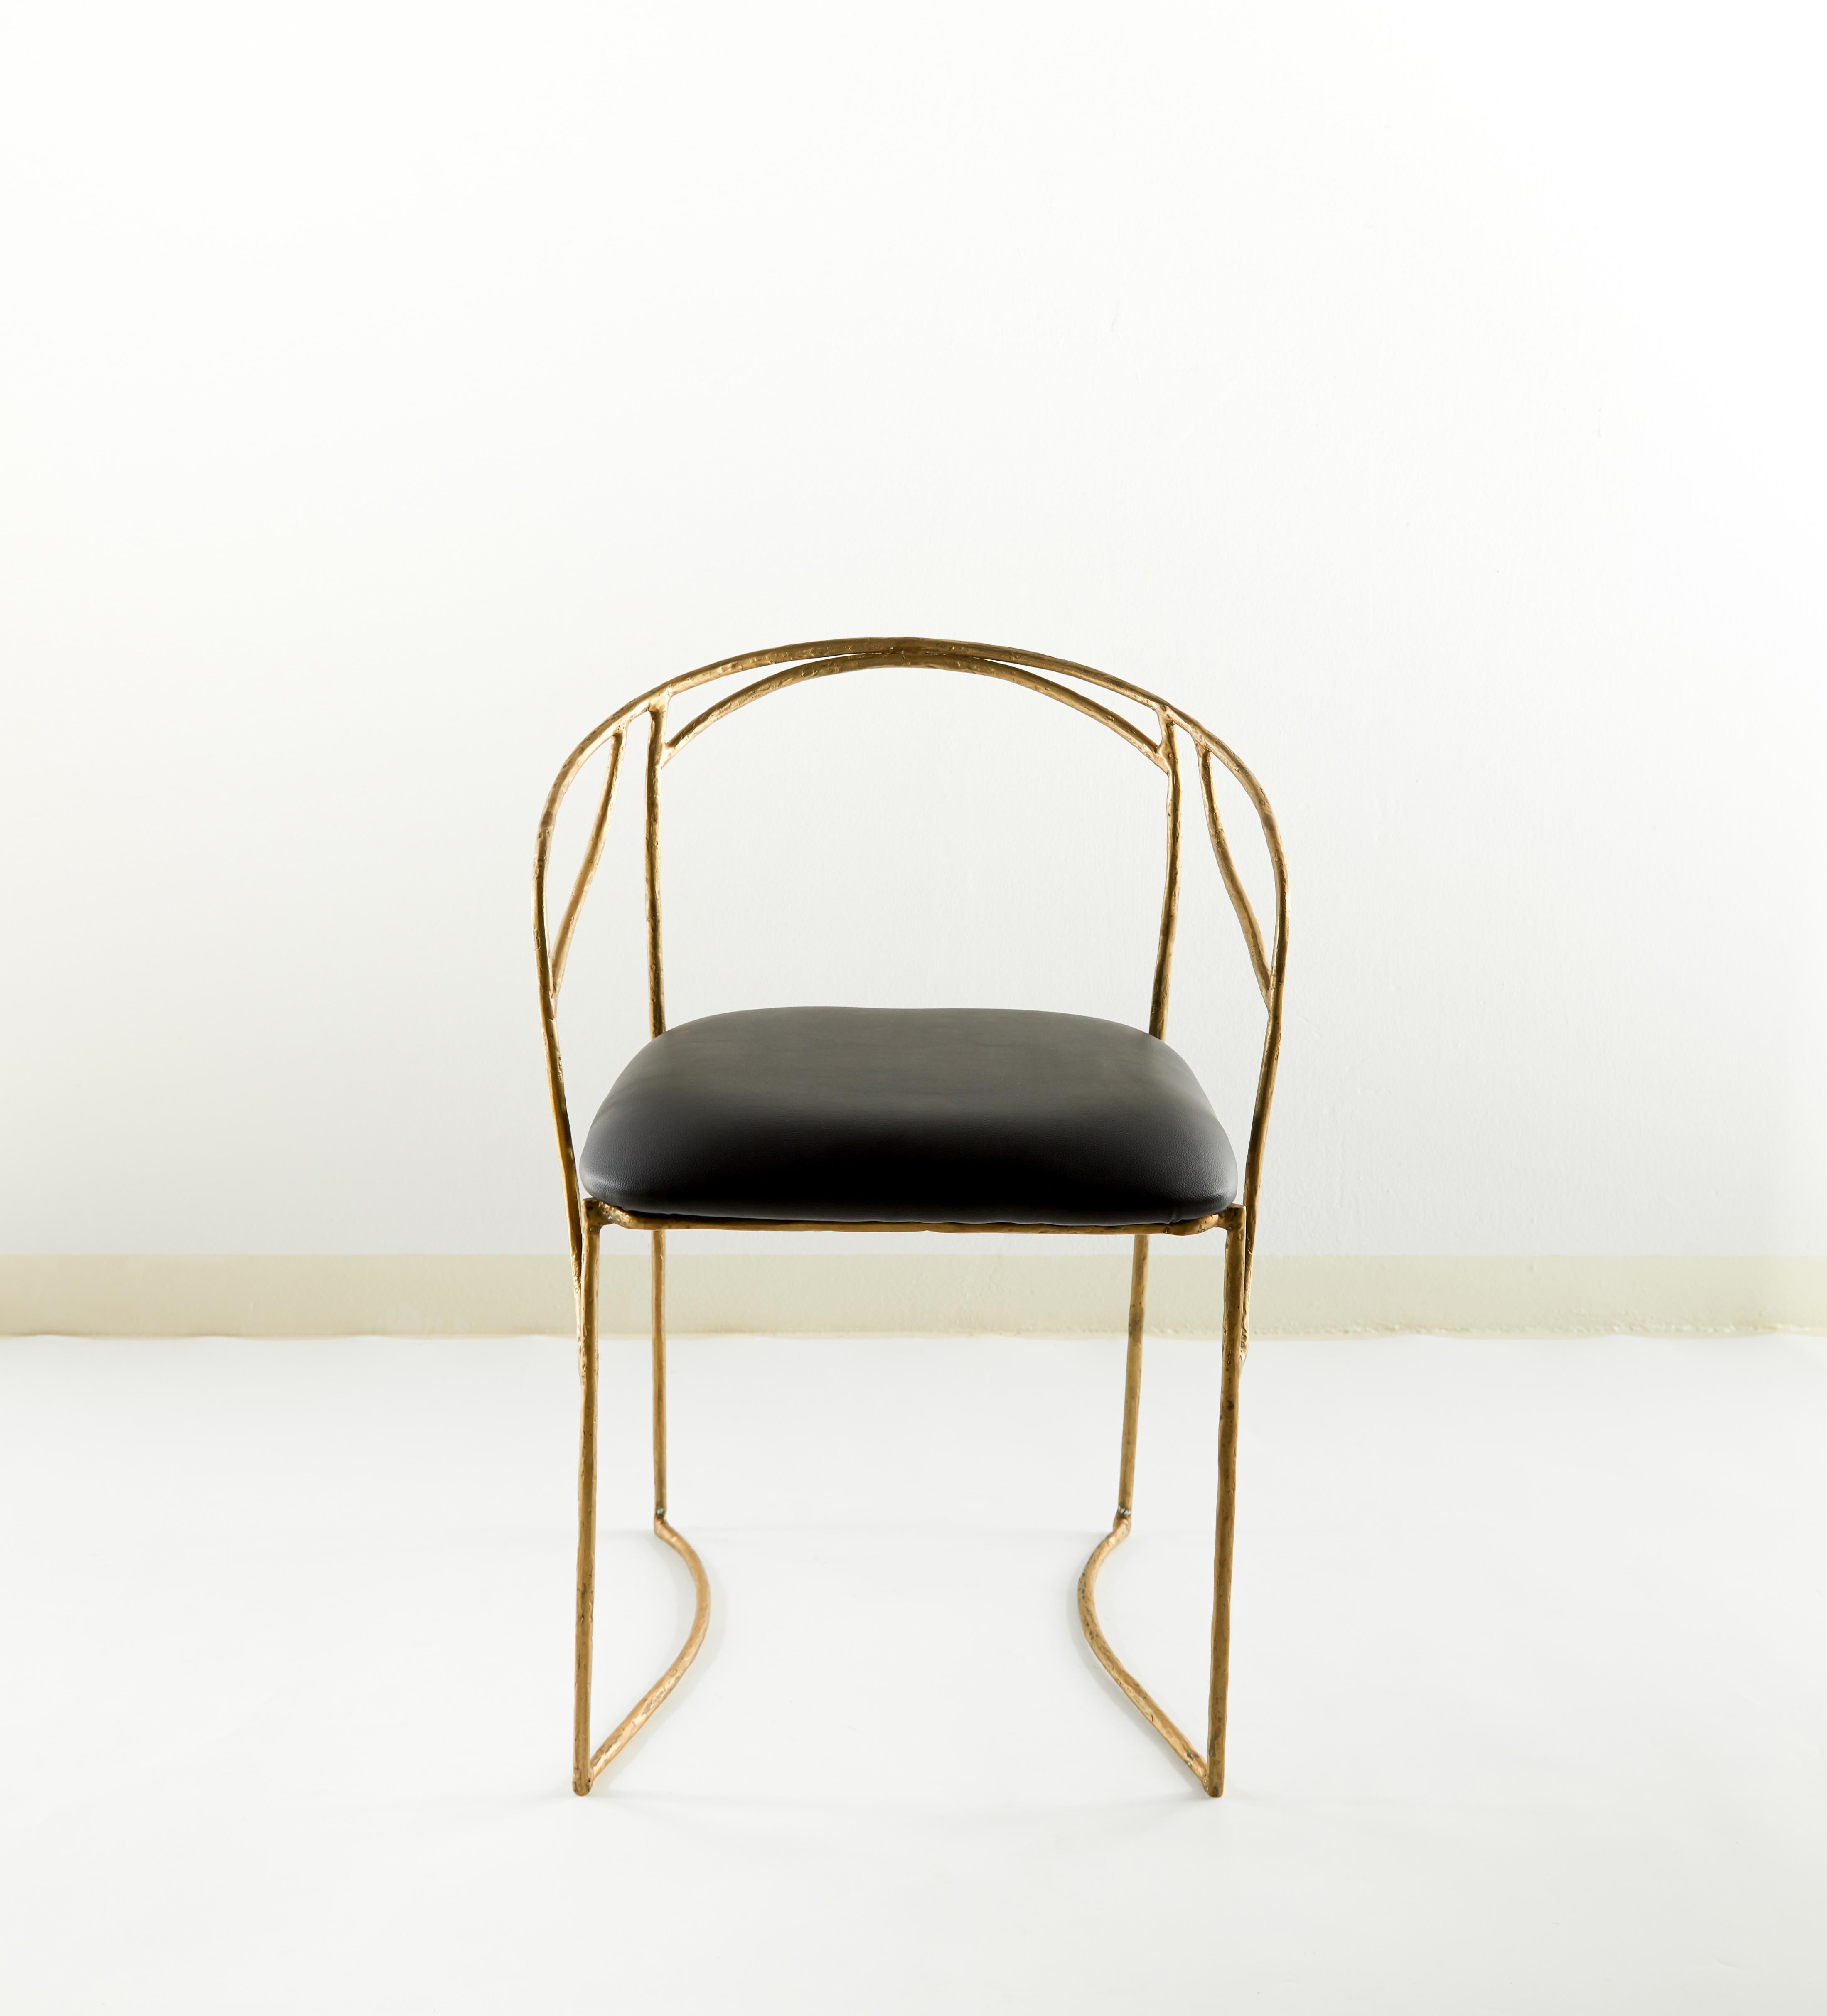 Stuhl von Masaya
Abmessungen: 79 x 56 x 48 cm
Messing
Mit den Händen geformt.
 